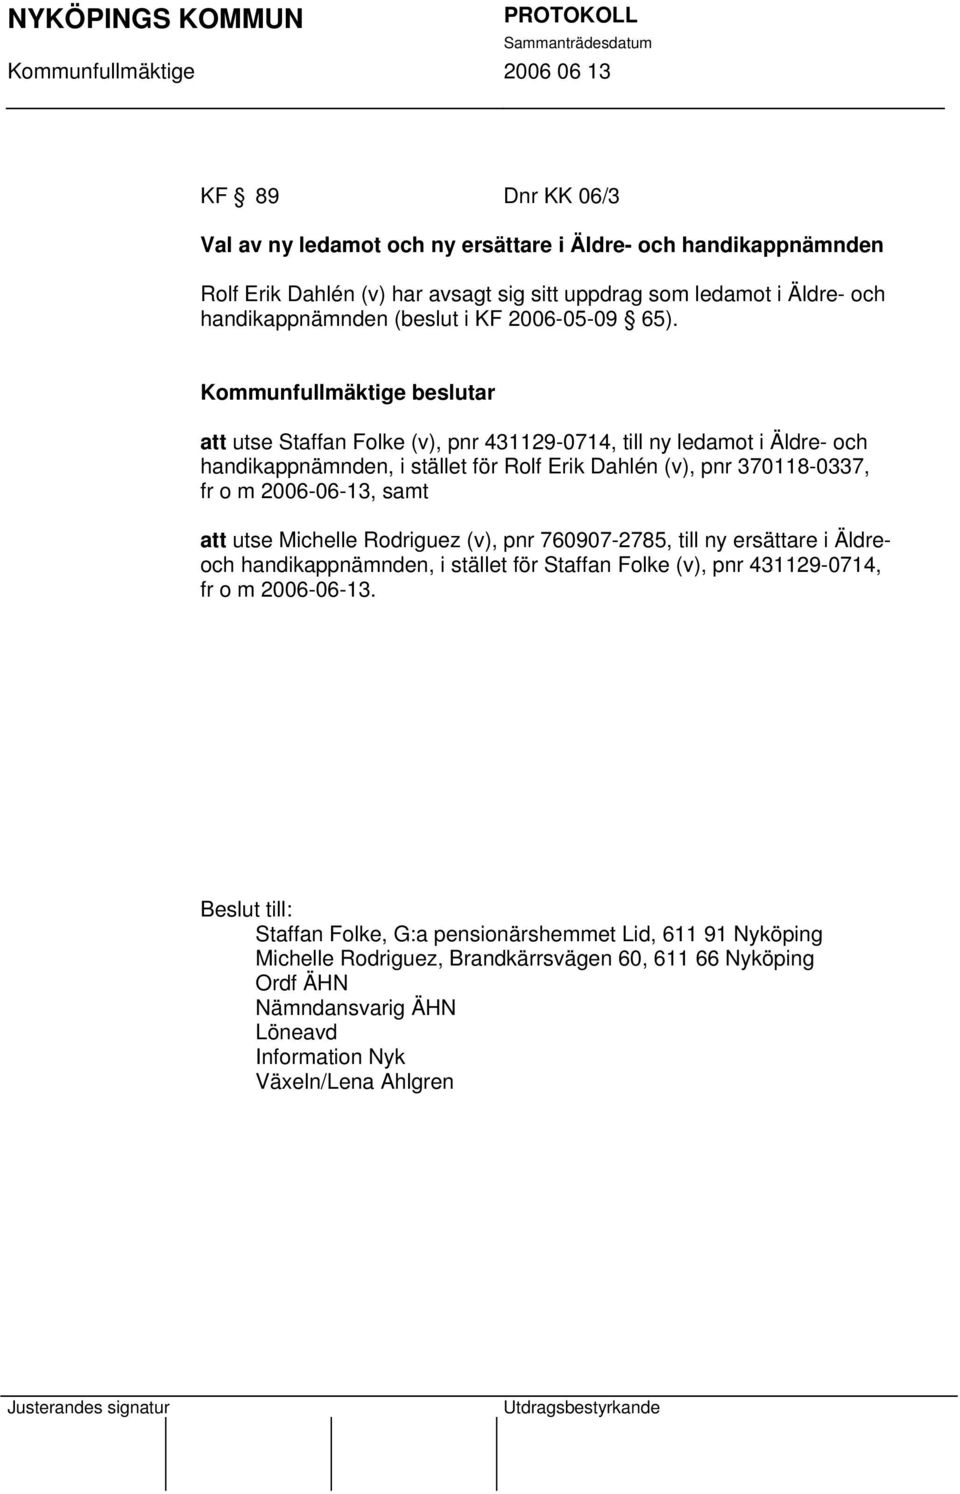 att utse Staffan Folke (v), pnr 431129-0714, till ny ledamot i Äldre- och handikappnämnden, i stället för Rolf Erik Dahlén (v), pnr 370118-0337, fr o m 2006-06-13, samt att utse